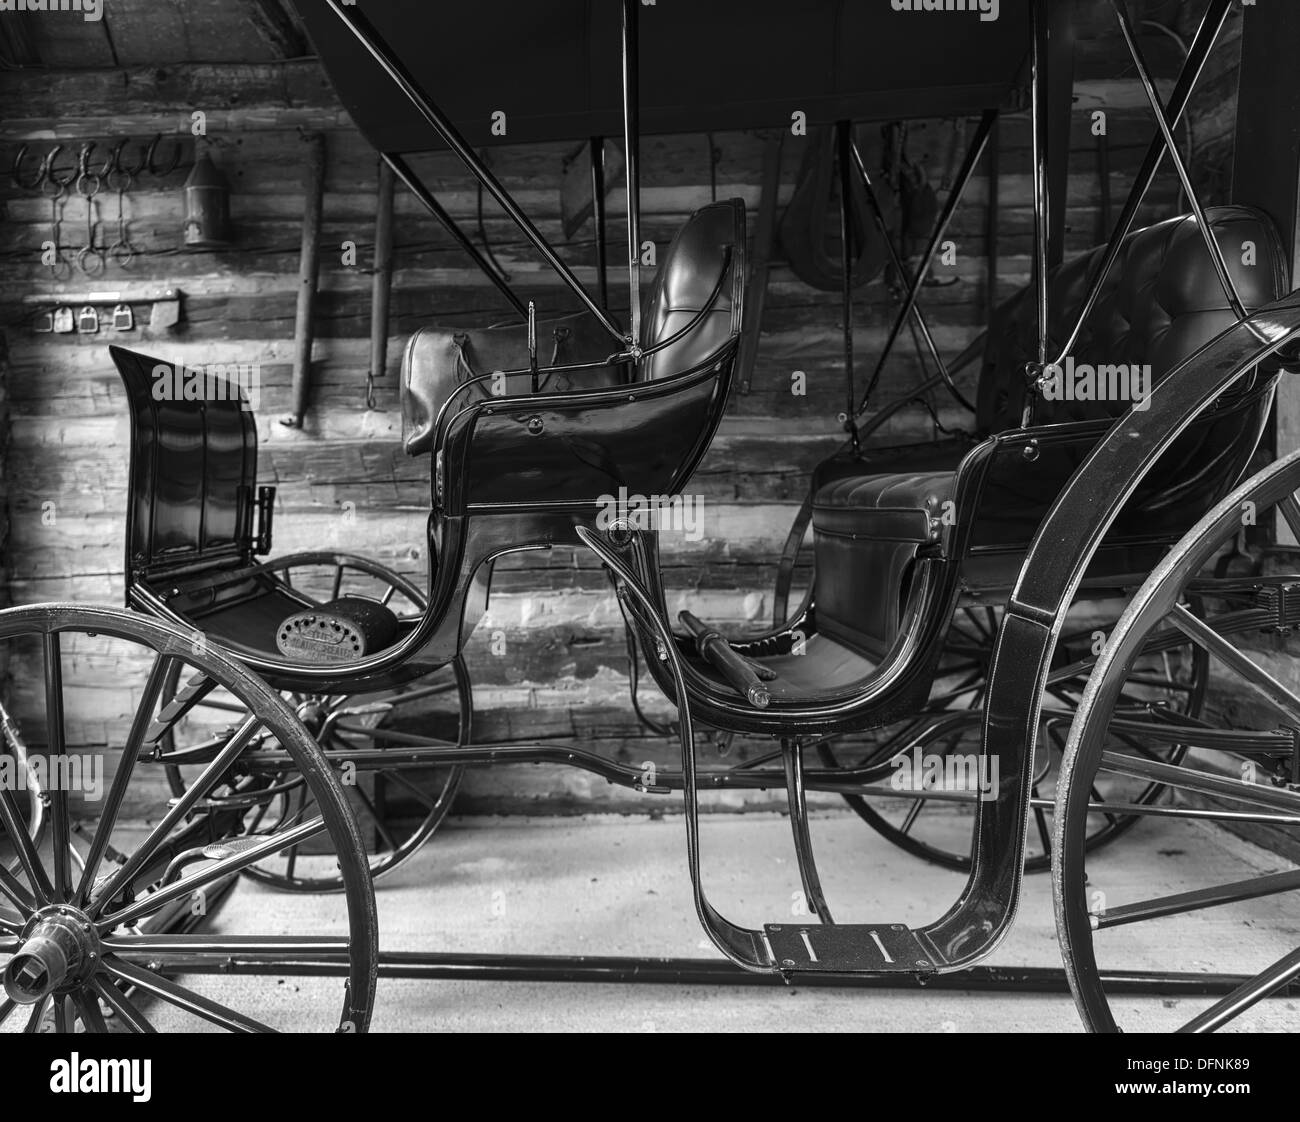 Un chariot de Sears a black& white style rédactionnel libre Banque D'Images